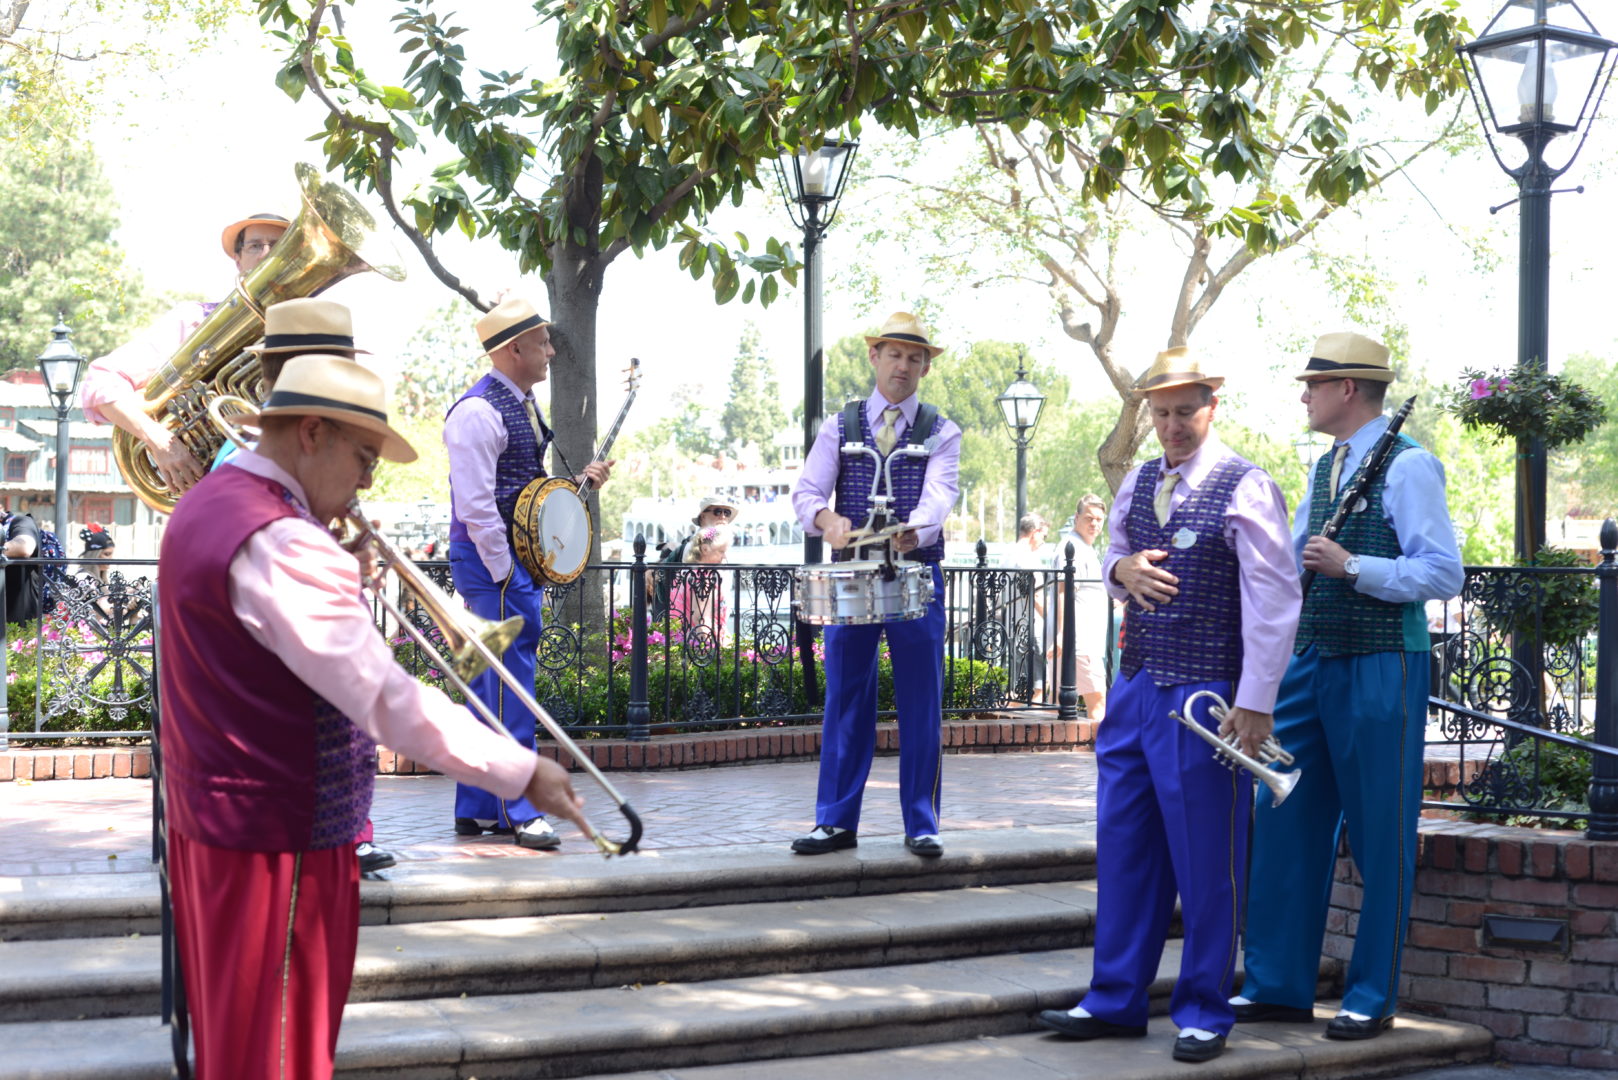 Jambalaya Jazz Band playing in New Orleans Square at Disneyland